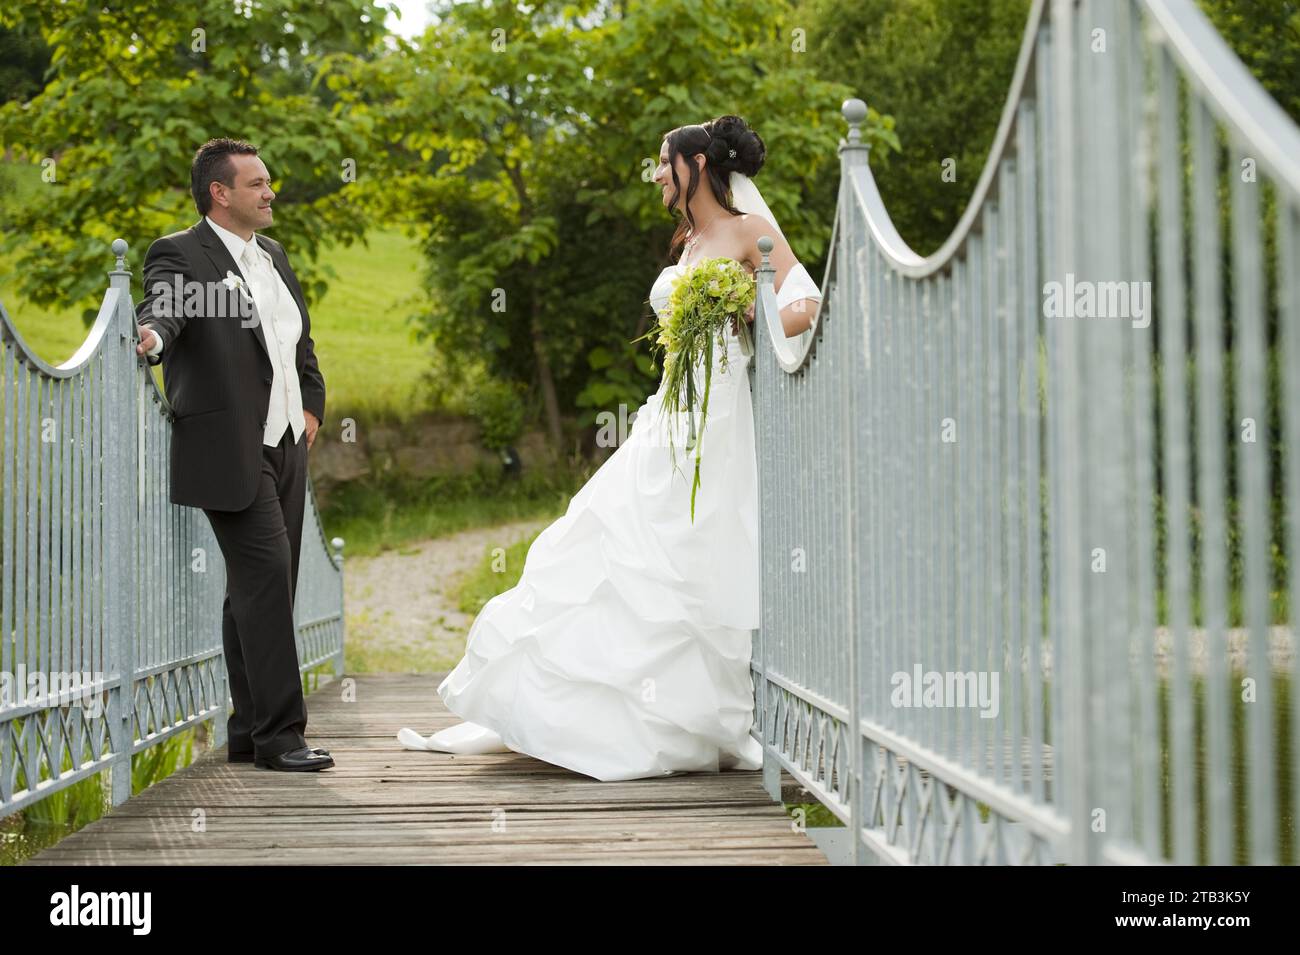 Romantisches Brautpaar am Parkeingang - weisses Tor, Mann, Frau, Anzugträger, Brautkleid, Blumen, Brautstrauss, Stock Photo